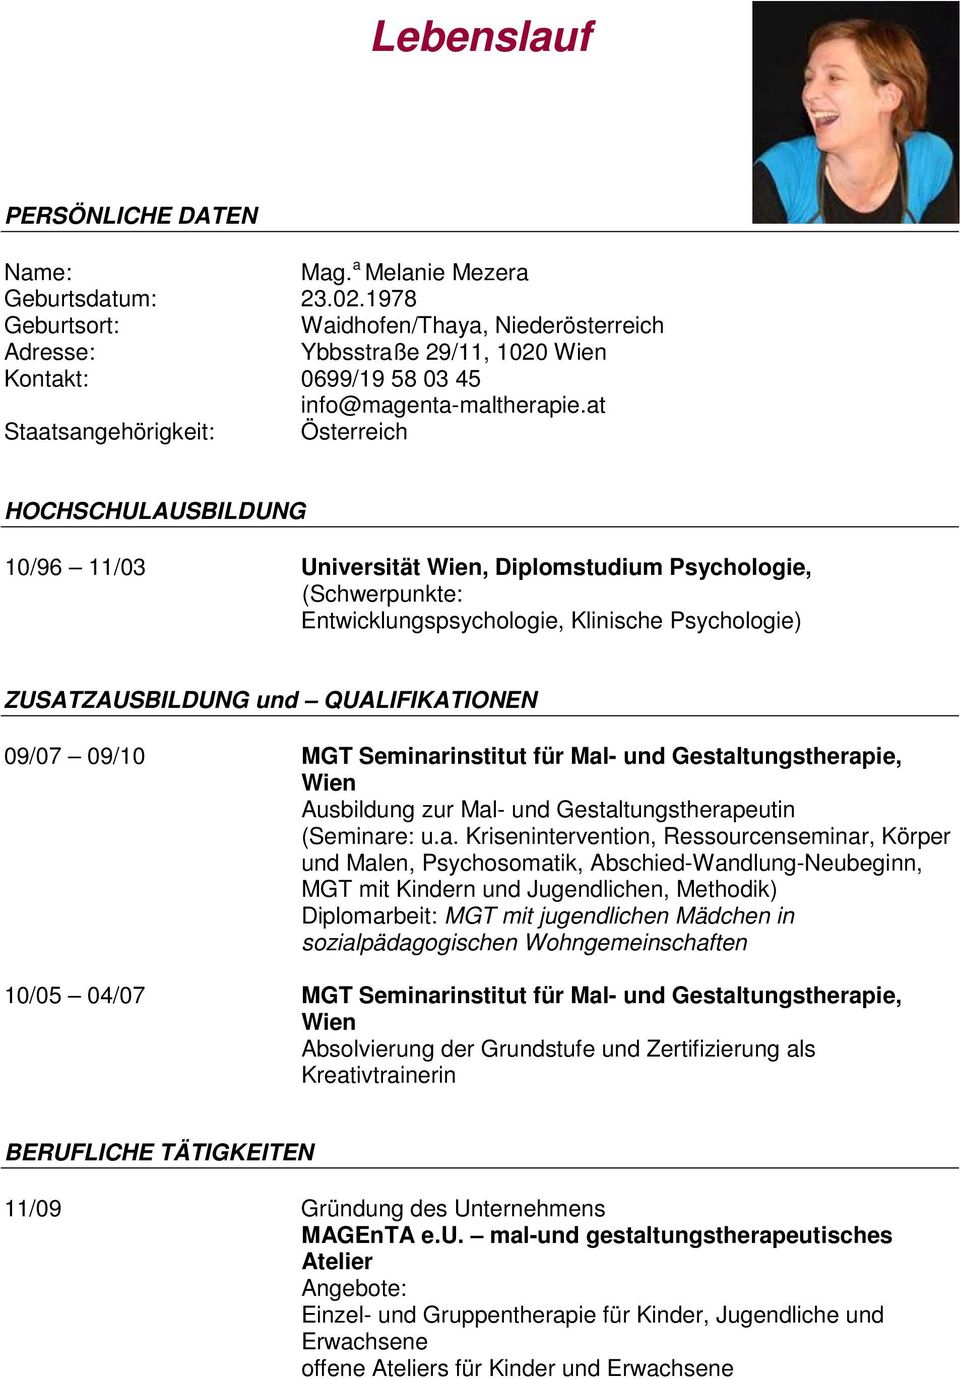 Lebenslauf 10 96 11 03 Universitat Wien Diplomstudium Psychologie Schwerpunkte Entwicklungspsychologie Klinische Psychologie Pdf Kostenfreier Download